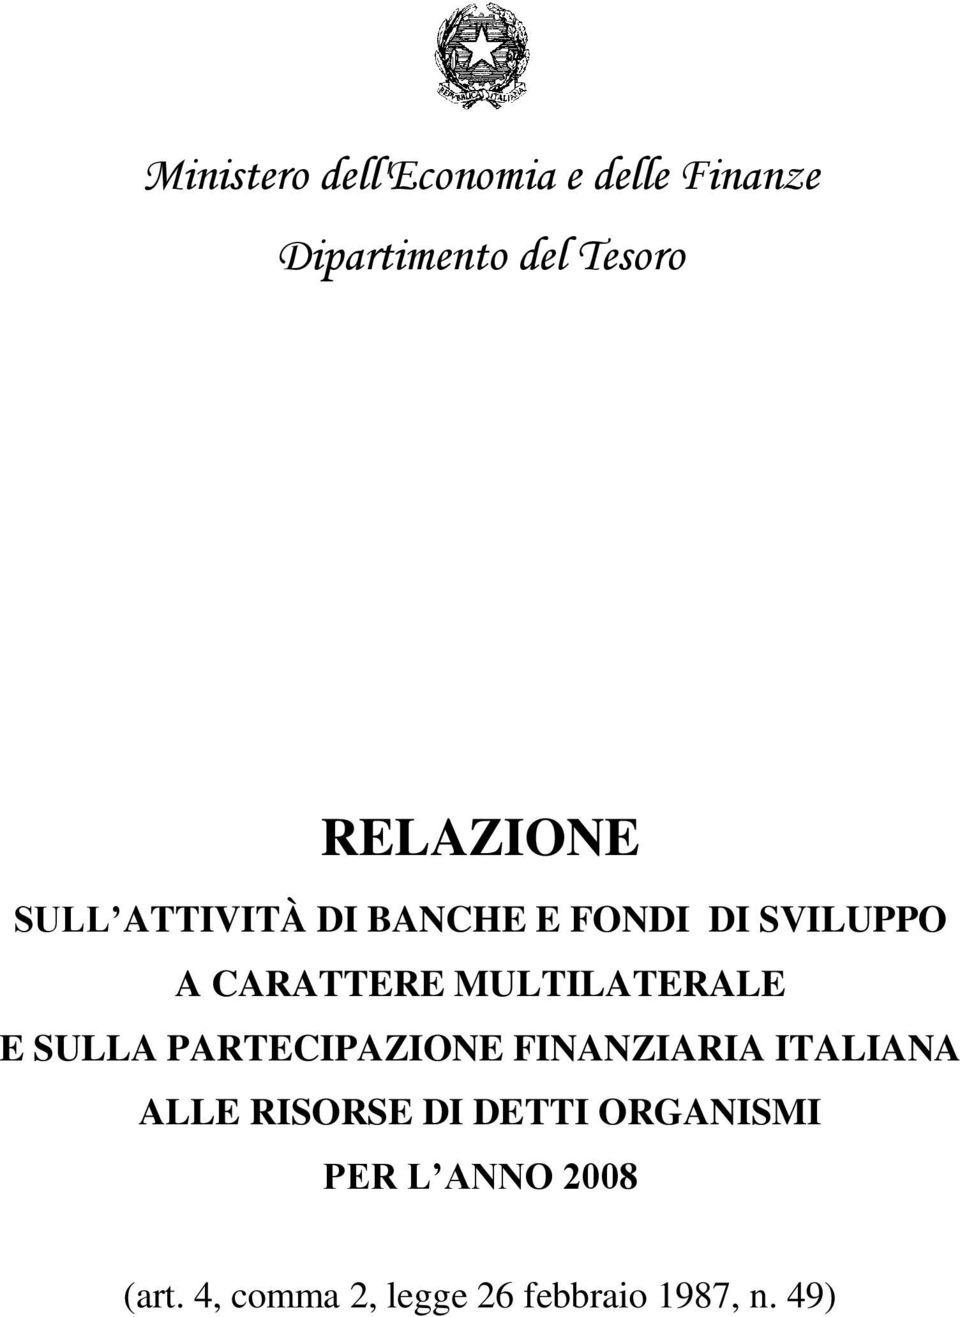 MULTILATERALE E SULLA PARTECIPAZIONE FINANZIARIA ITALIANA ALLE RISORSE